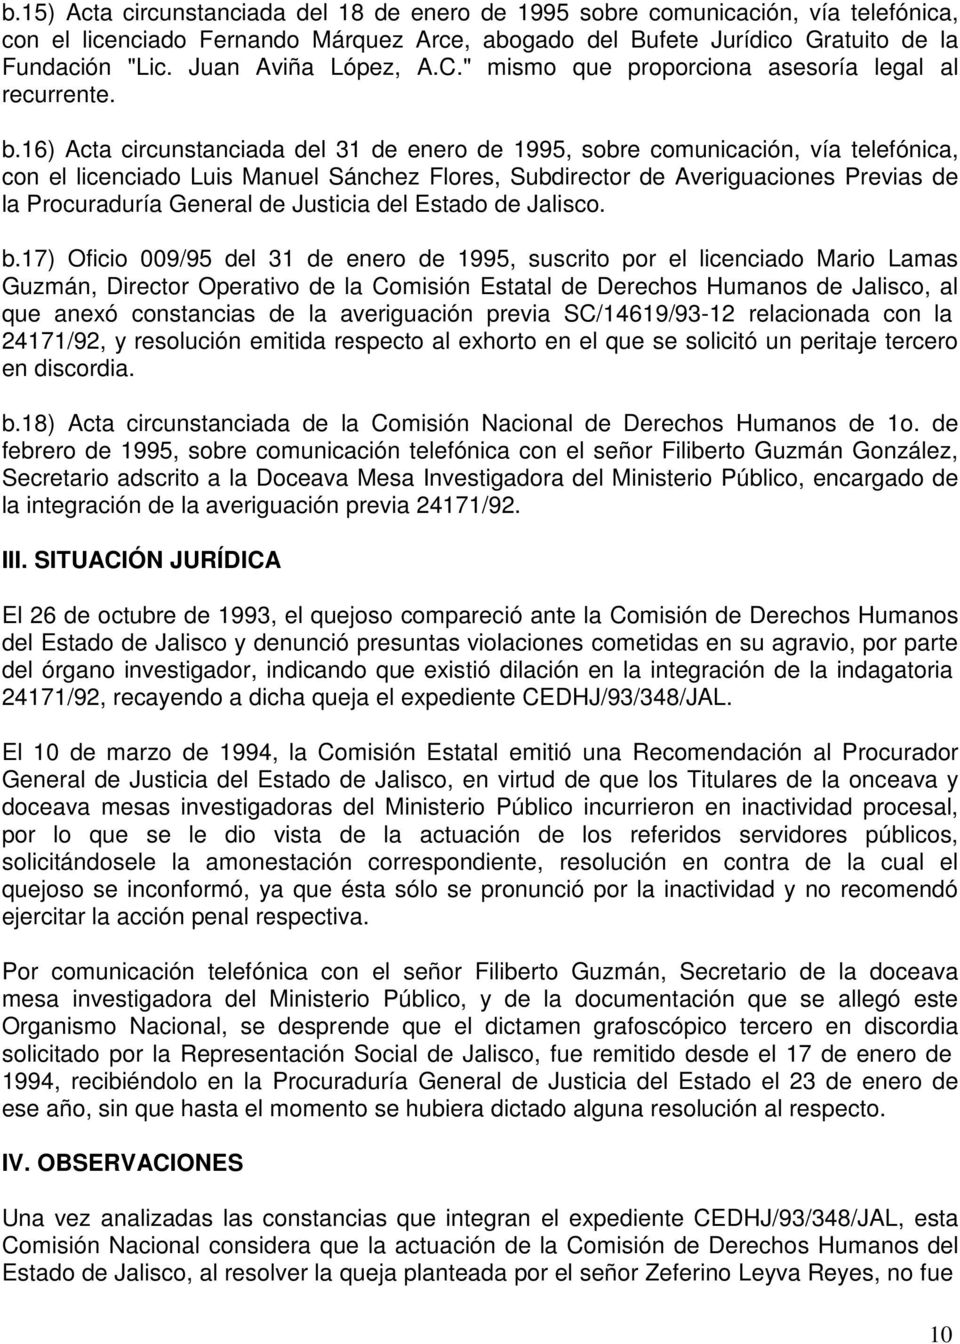 16) Acta circunstanciada del 31 de enero de 1995, sobre comunicación, vía telefónica, con el licenciado Luis Manuel Sánchez Flores, Subdirector de Averiguaciones Previas de la Procuraduría General de